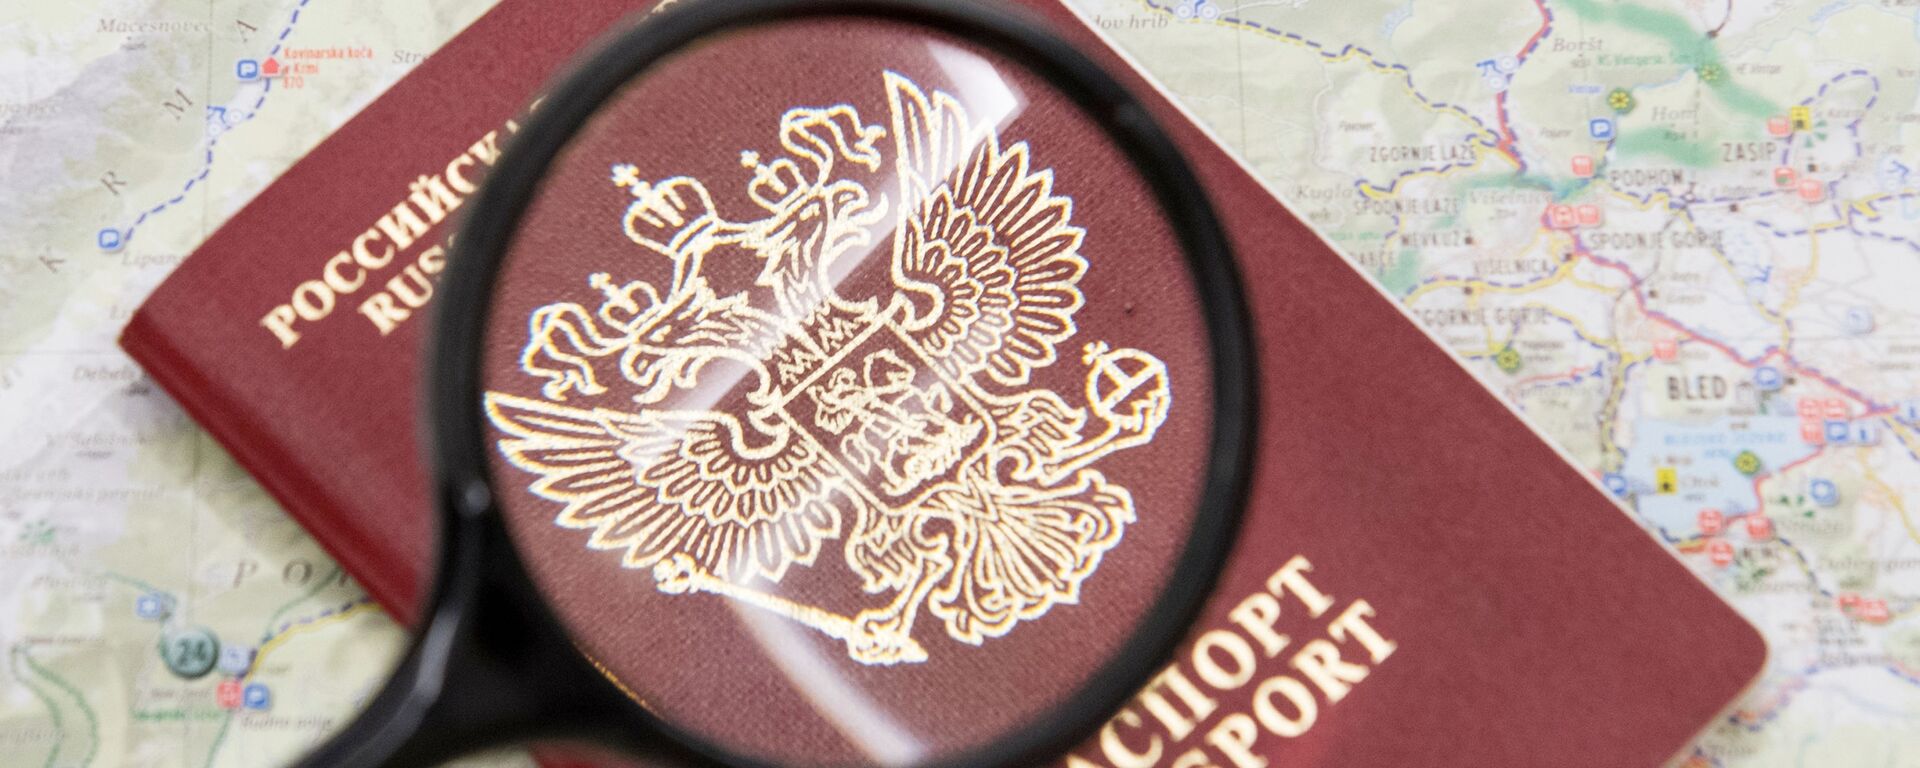 Паспорт гражданина Российской Федерации. - Sputnik Lietuva, 1920, 07.04.2021